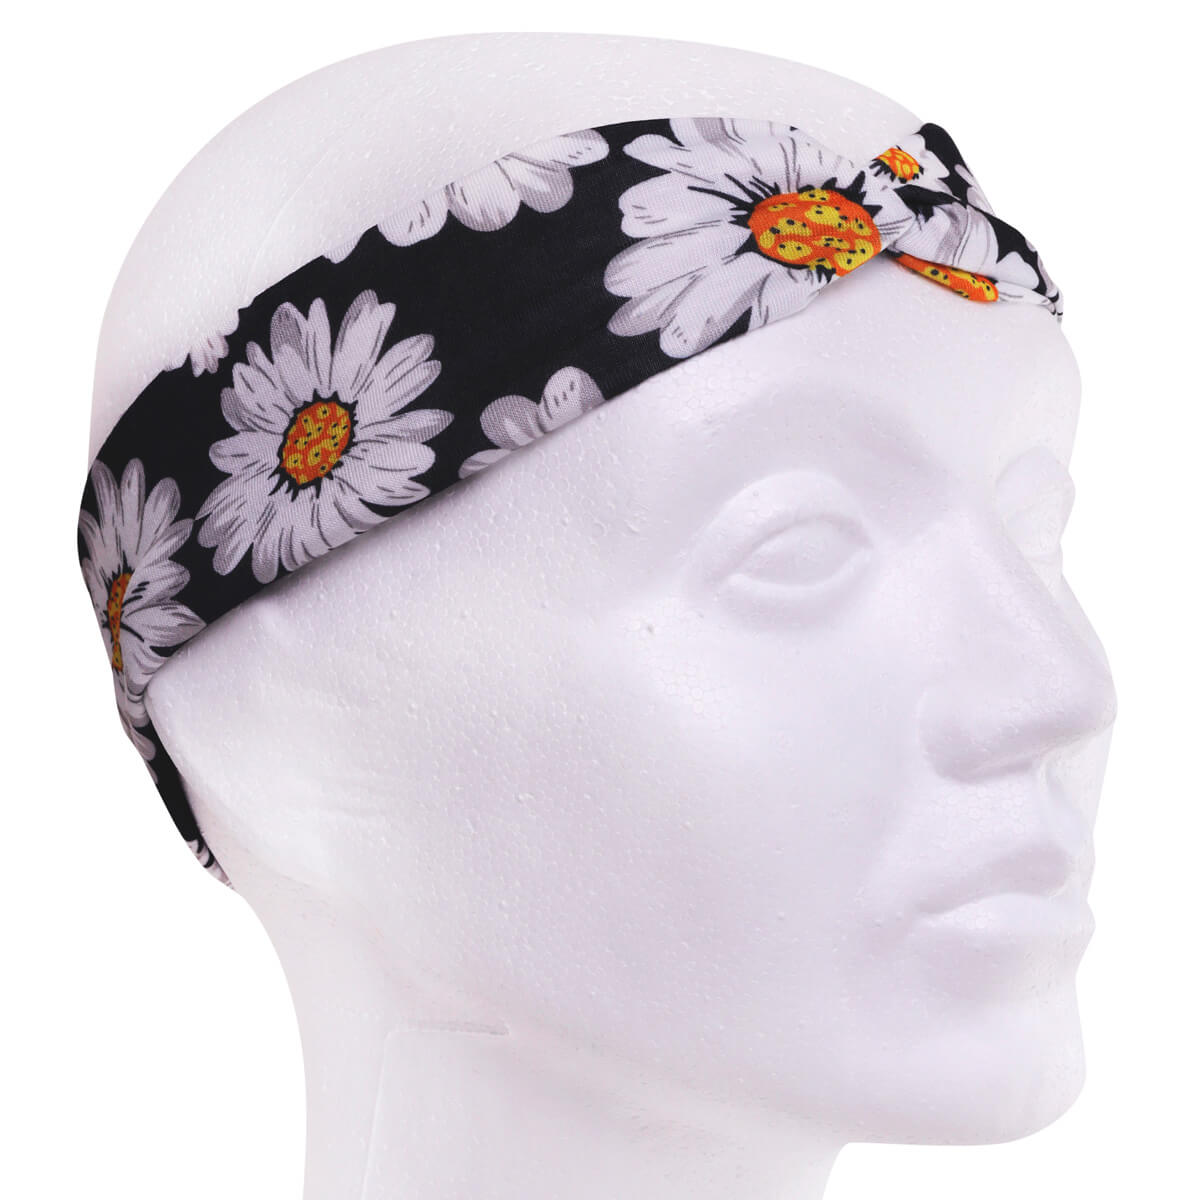 Daisy hairband with elastic headband